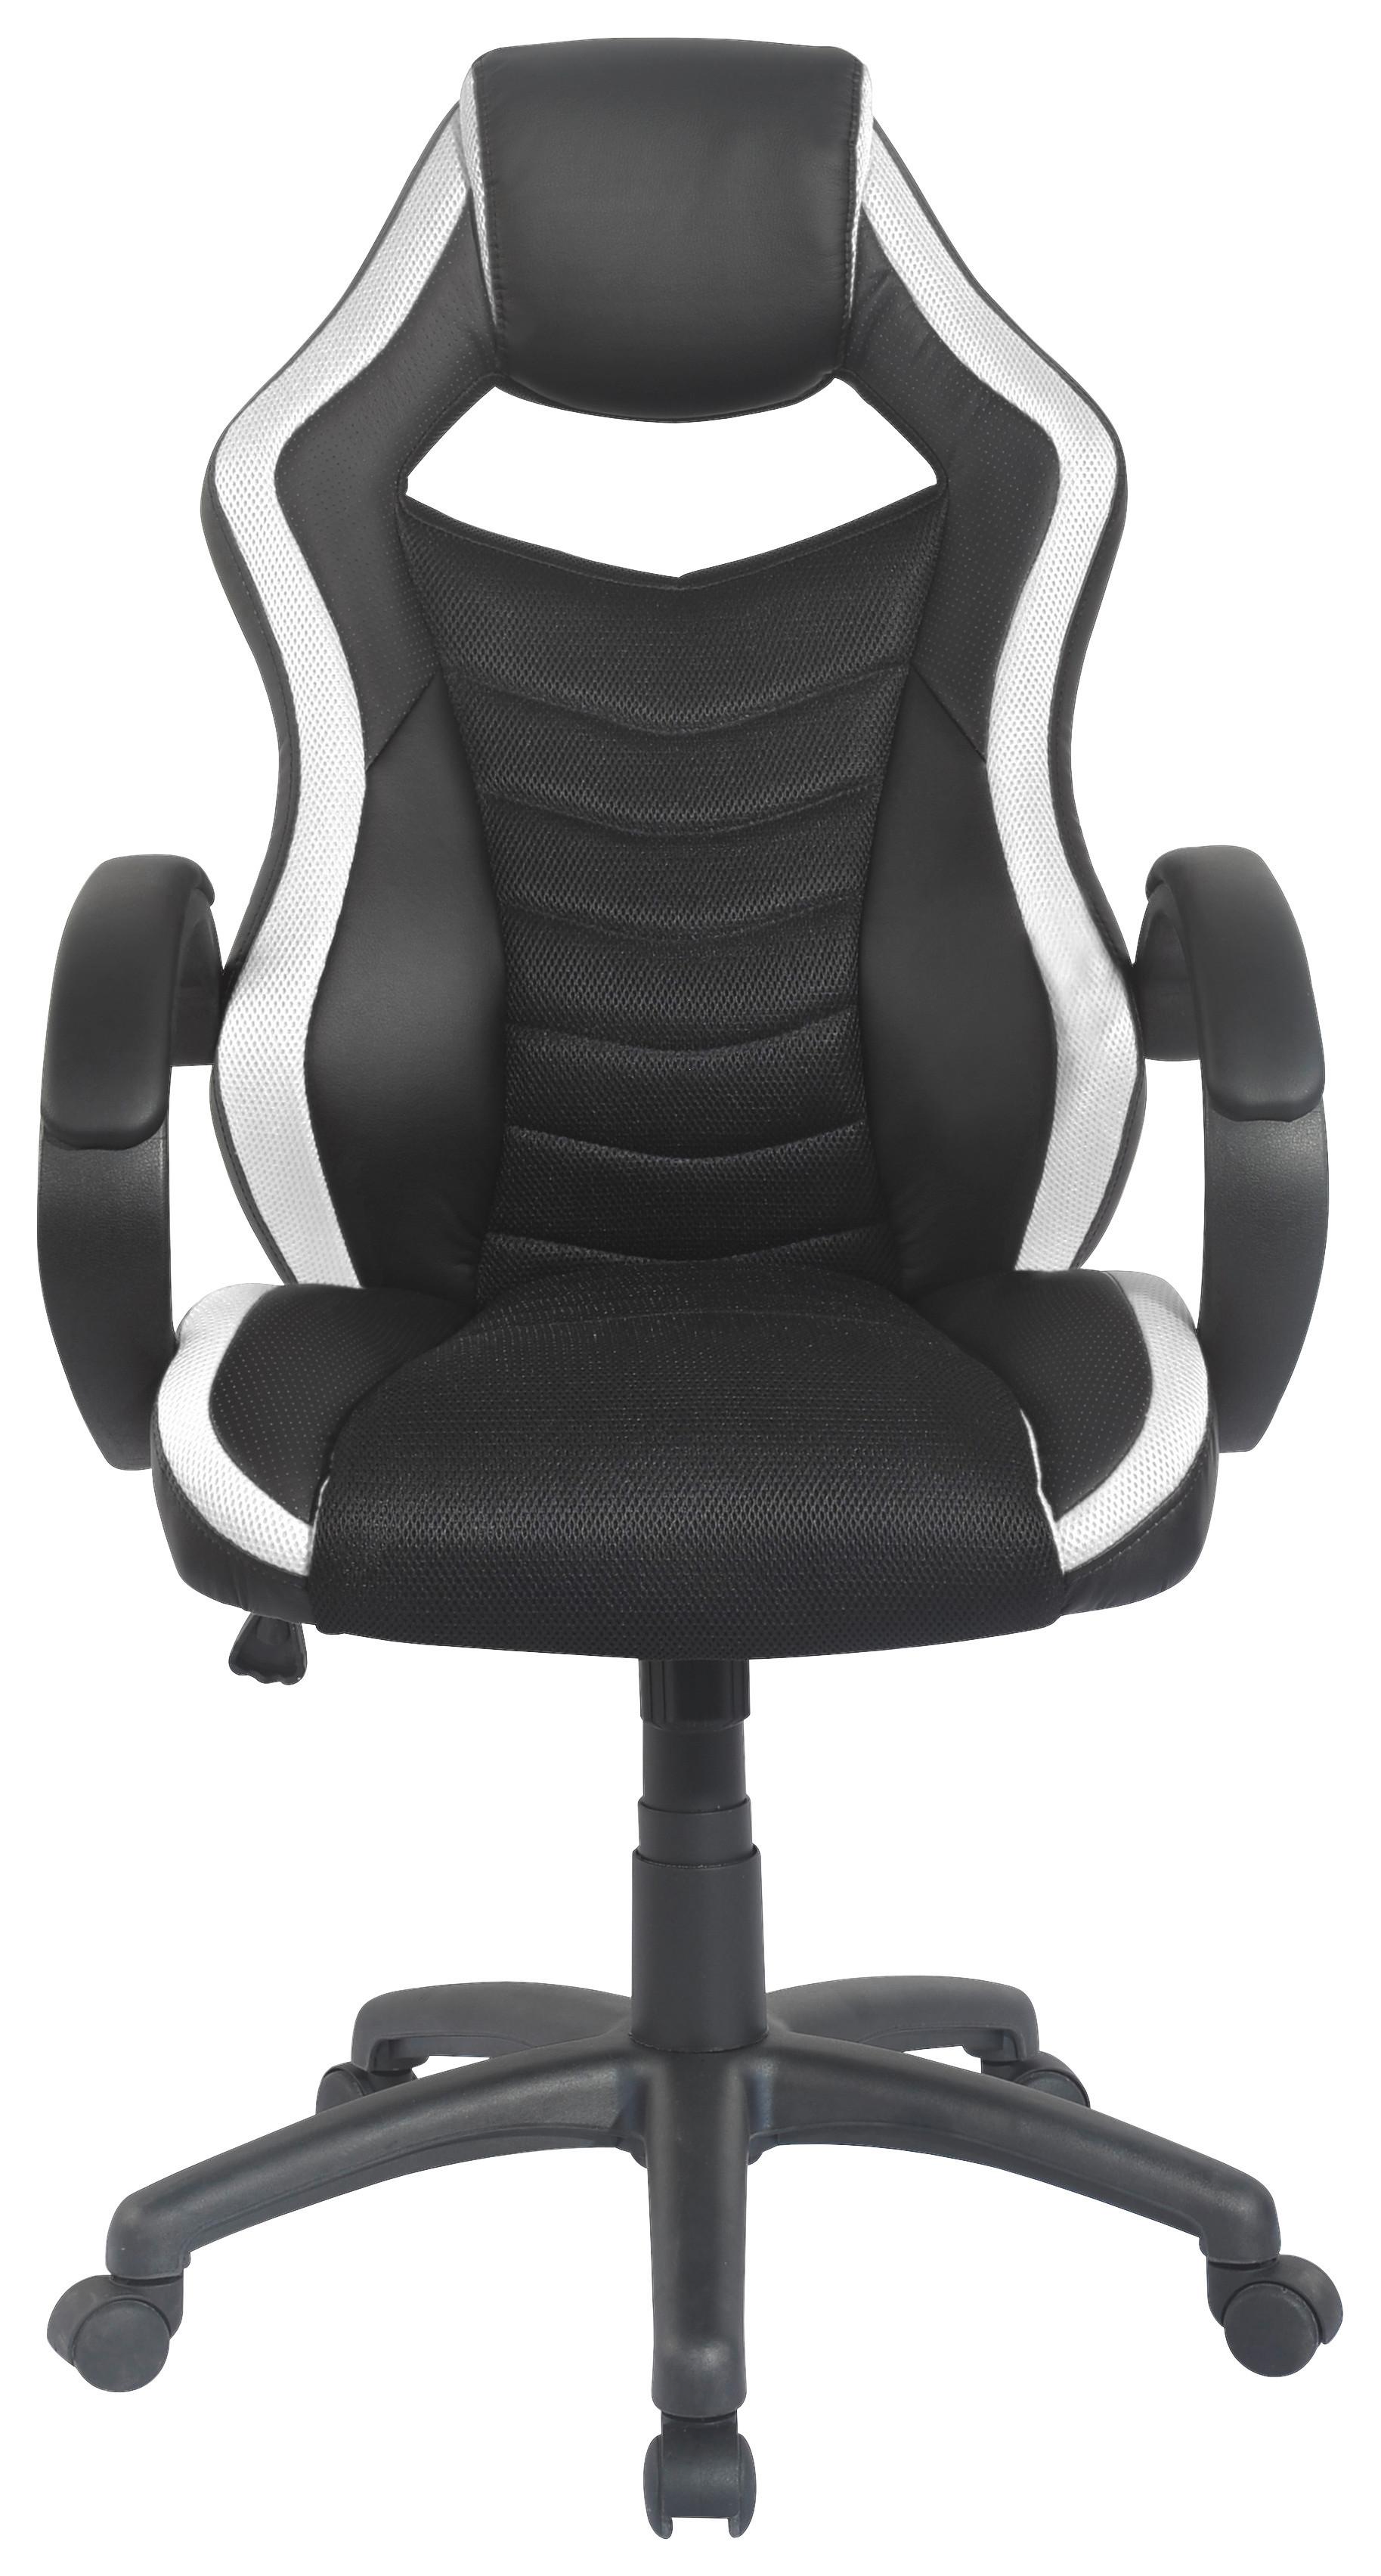 Gaming Stuhl Hornet Mit Armlehnen und Wippmechanik - Schwarz/Weiß, MODERN, Kunststoff/Textil (61/113/69cm) - MID.YOU